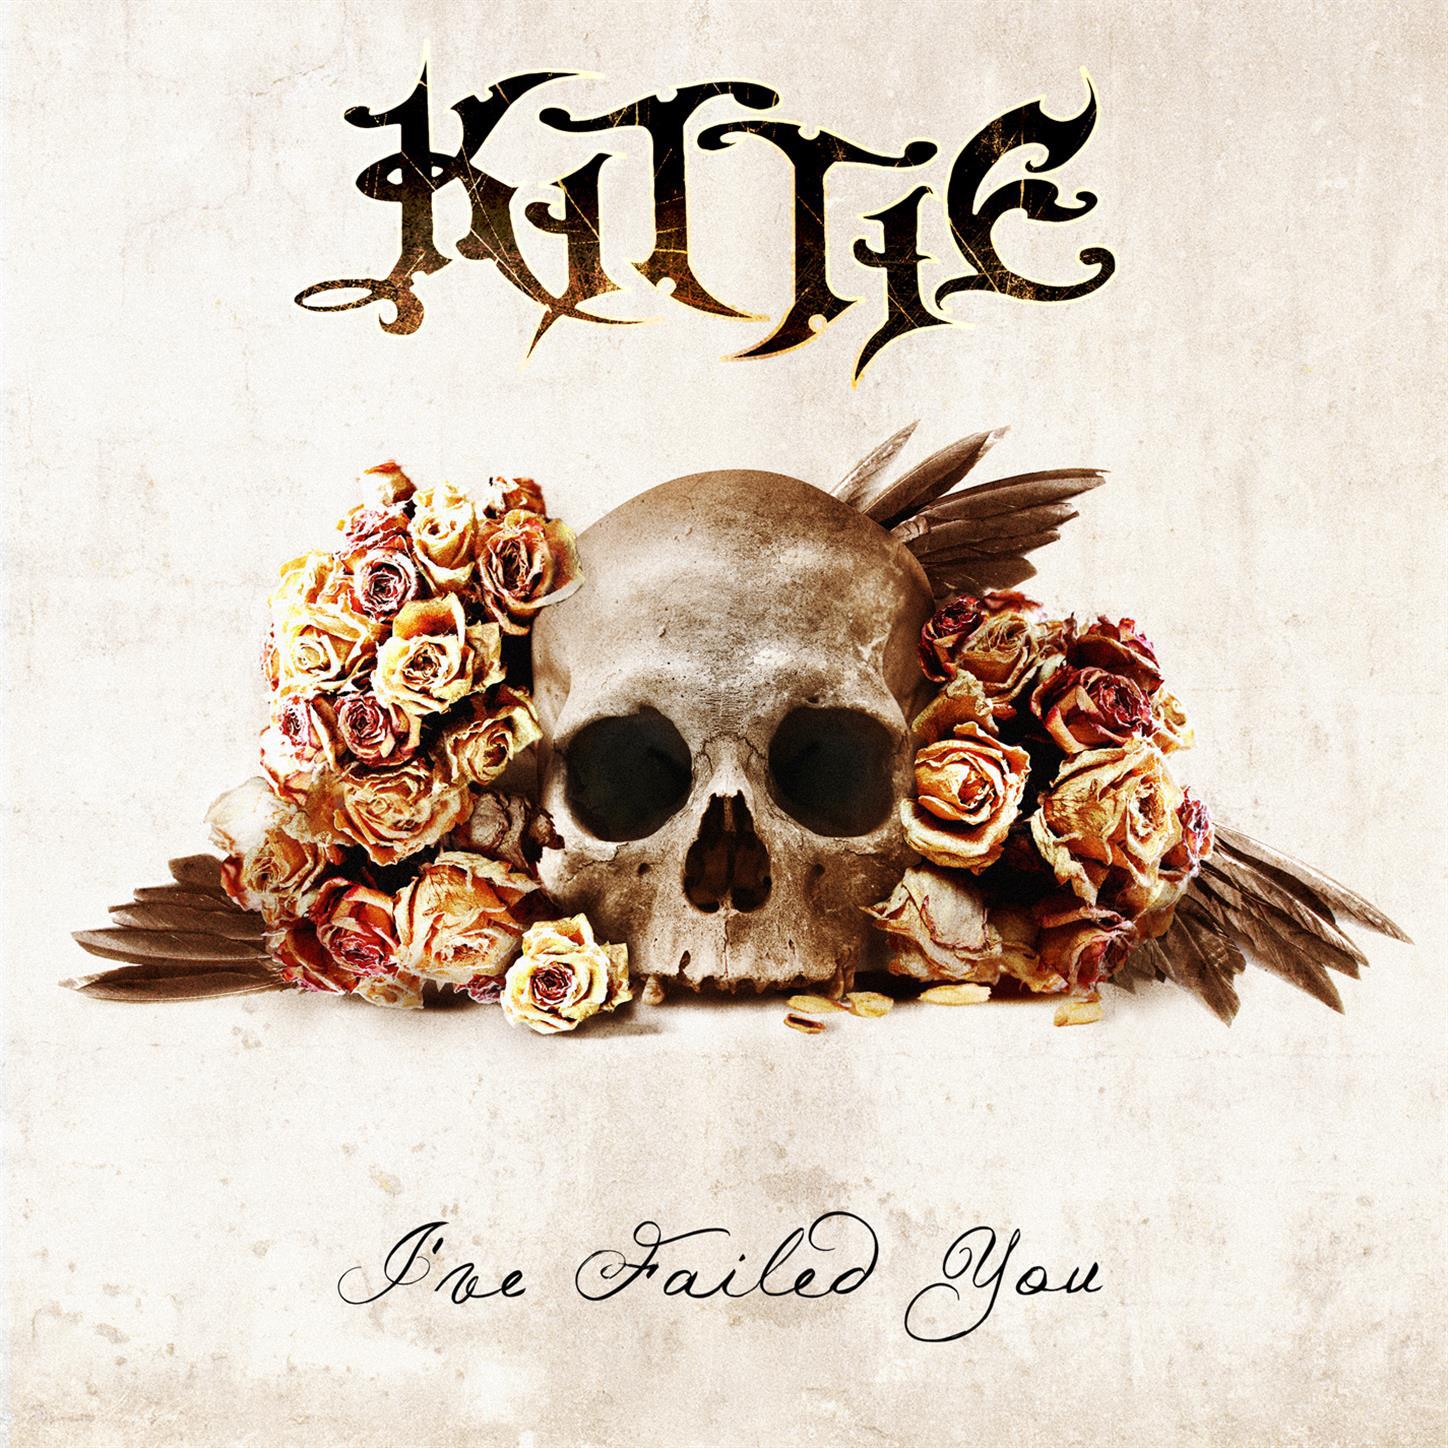 Kittie - Whisper Of Death